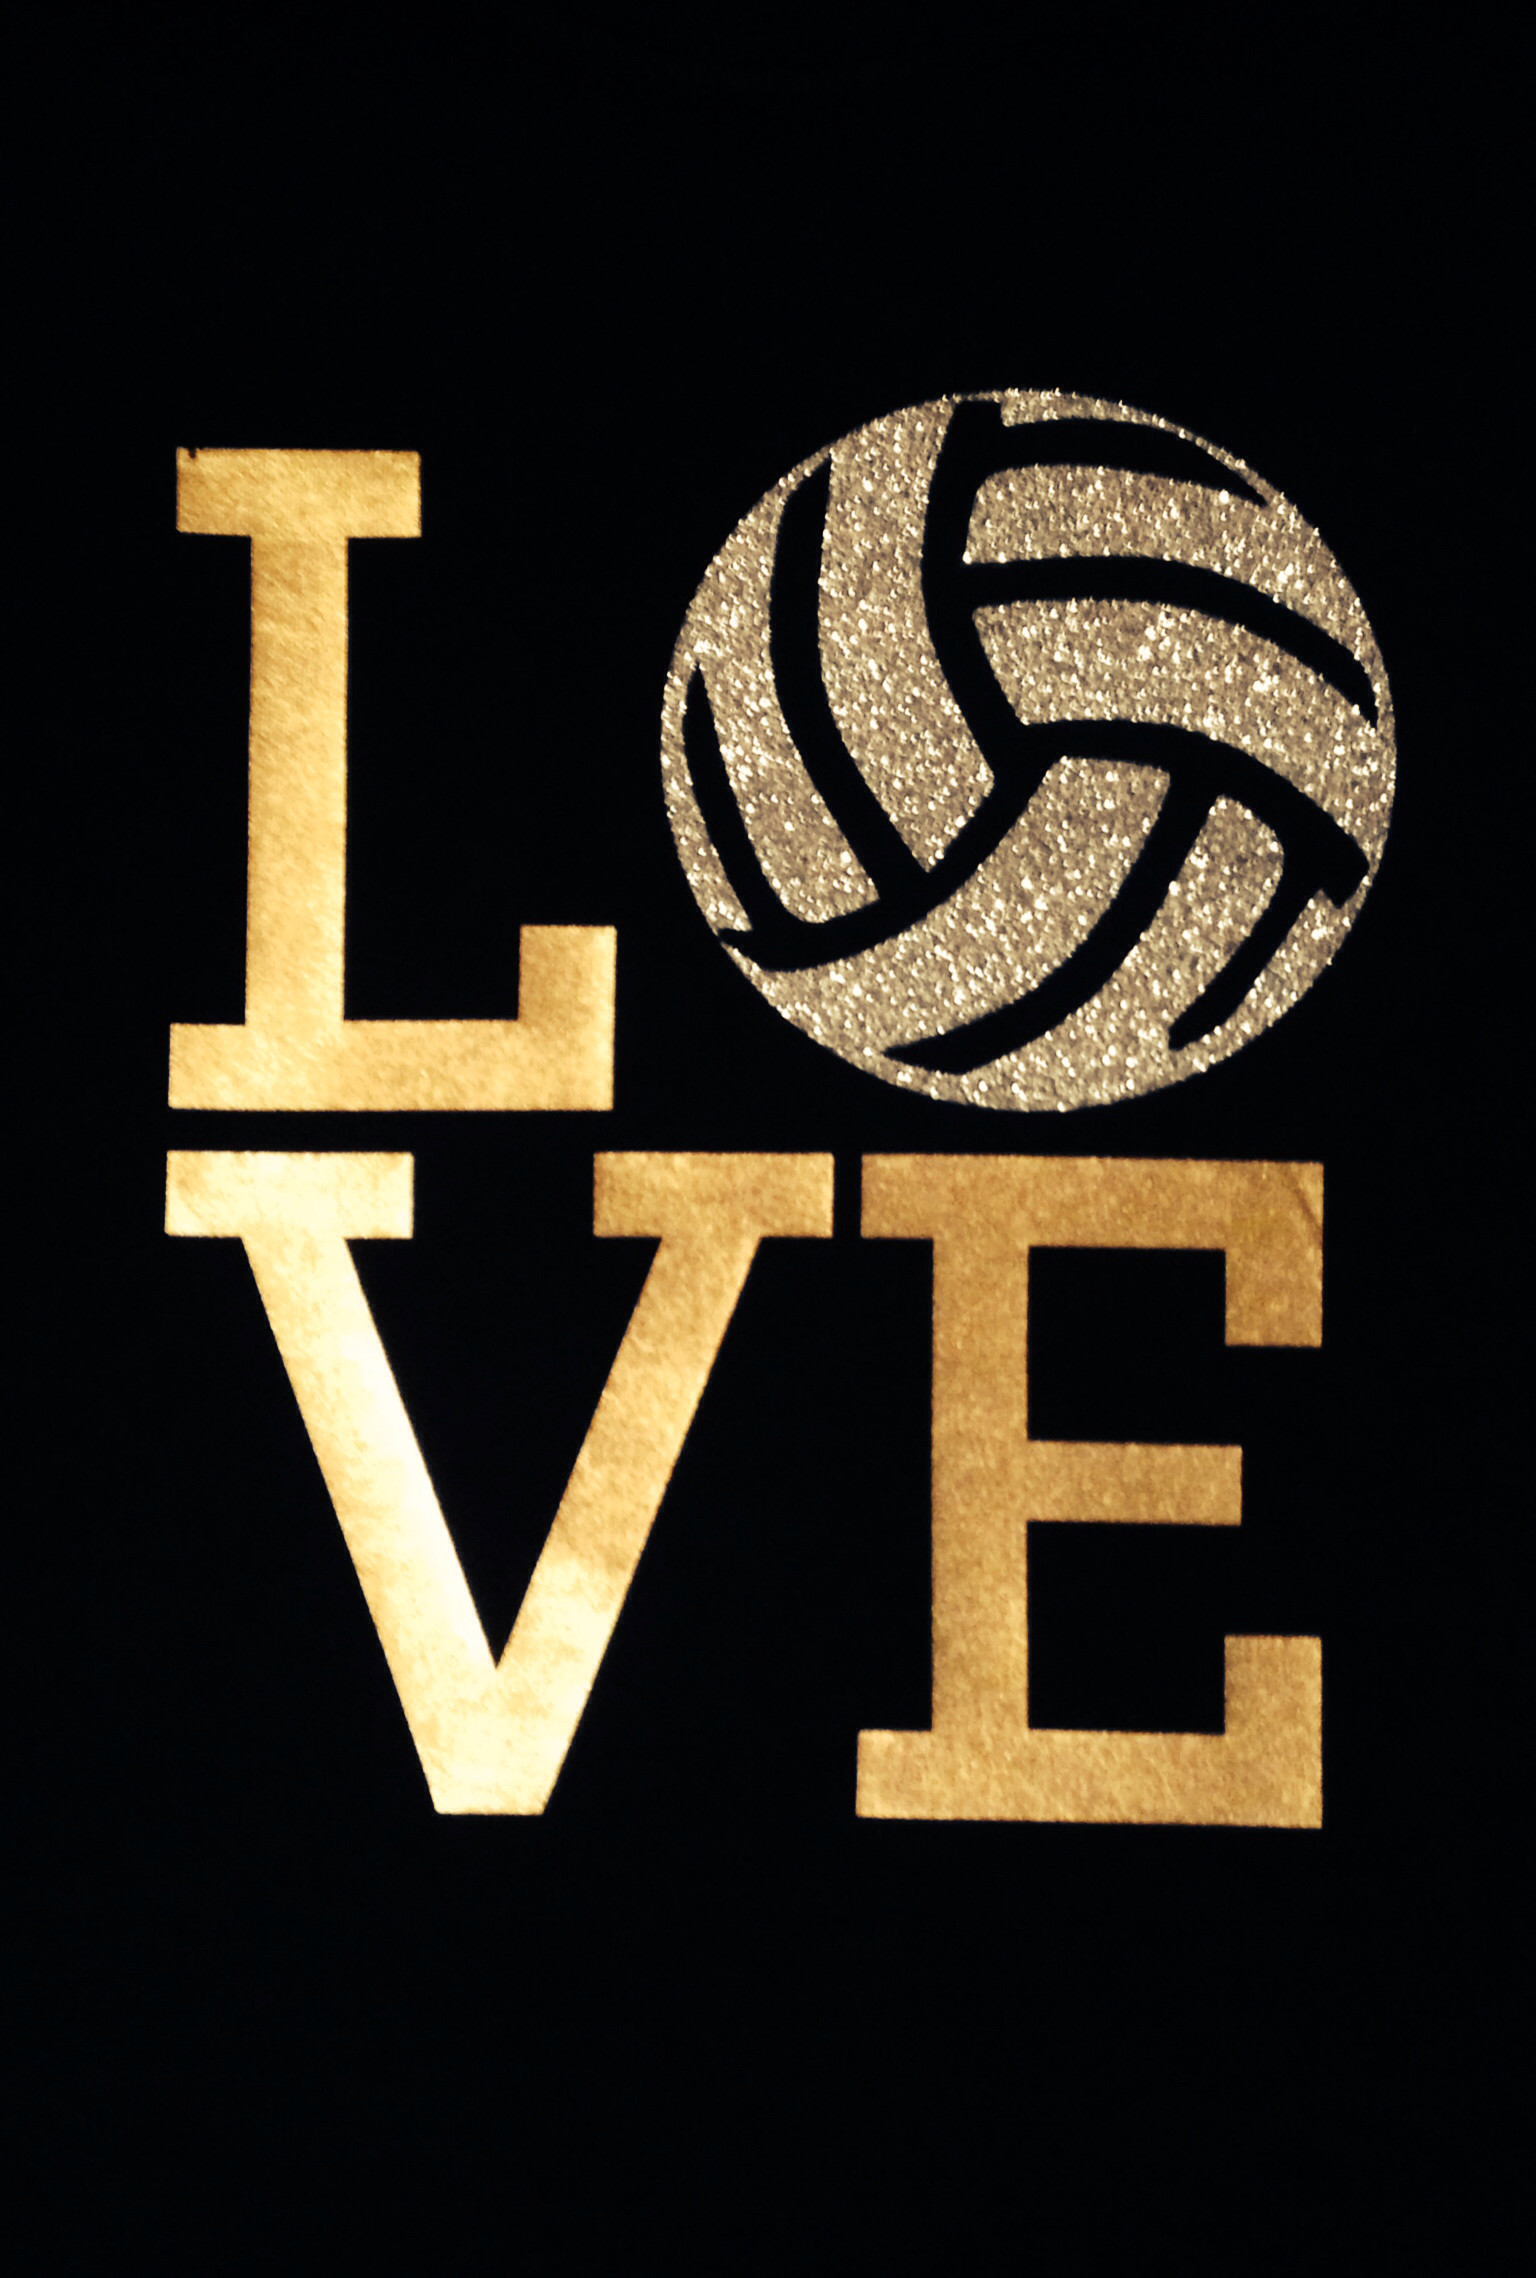 1536x2278 â¤ï¸Jesus Christ, Family, Friends, and Volleyball are what I live for!